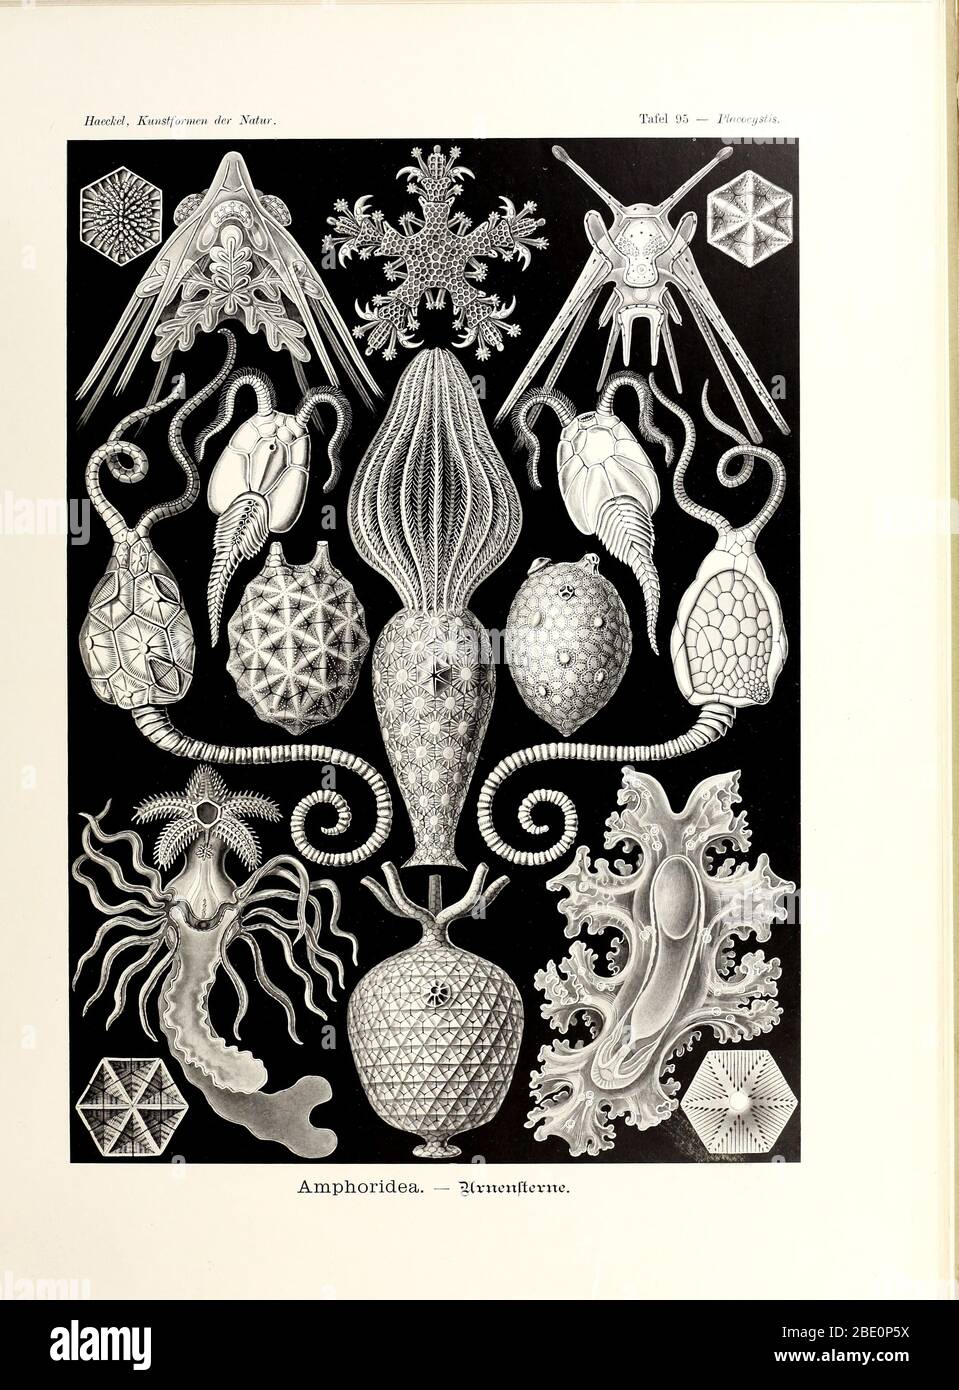 from Ernst Haeckel's Kunstformen der Natur, 1904 Stock Photo - Alamy